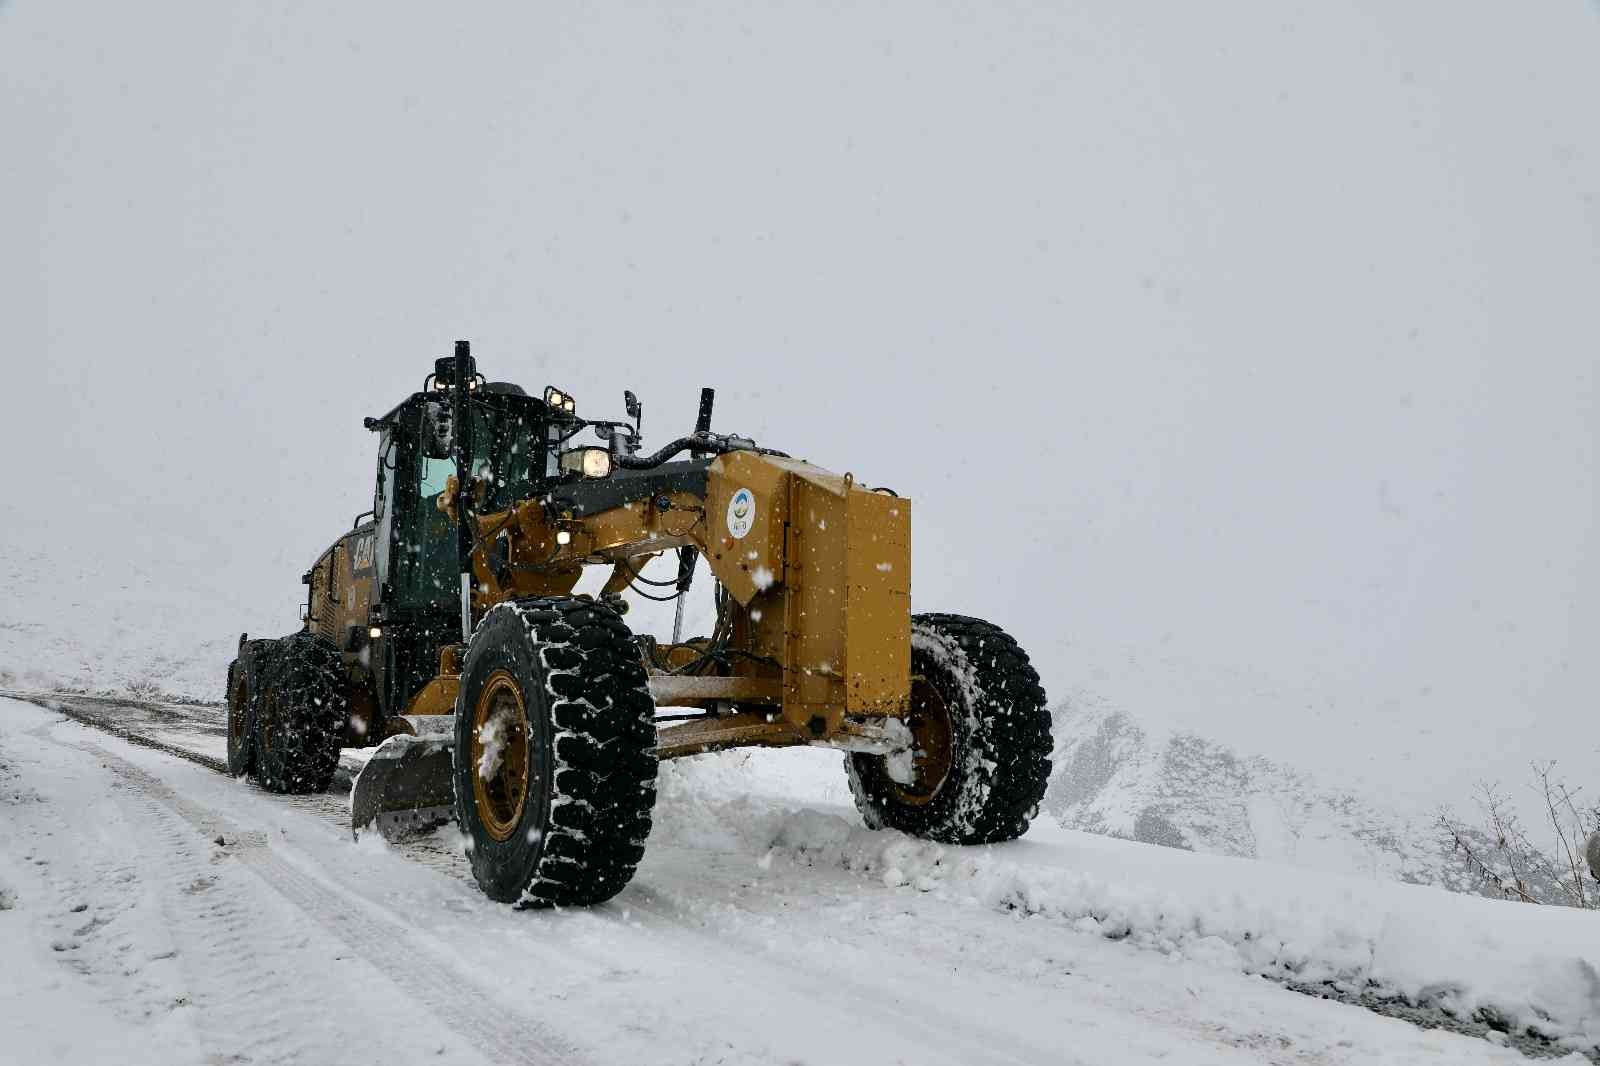 Ağrı’da “Kar Kaplanları” kapanan yollar için seferber oldu #agri